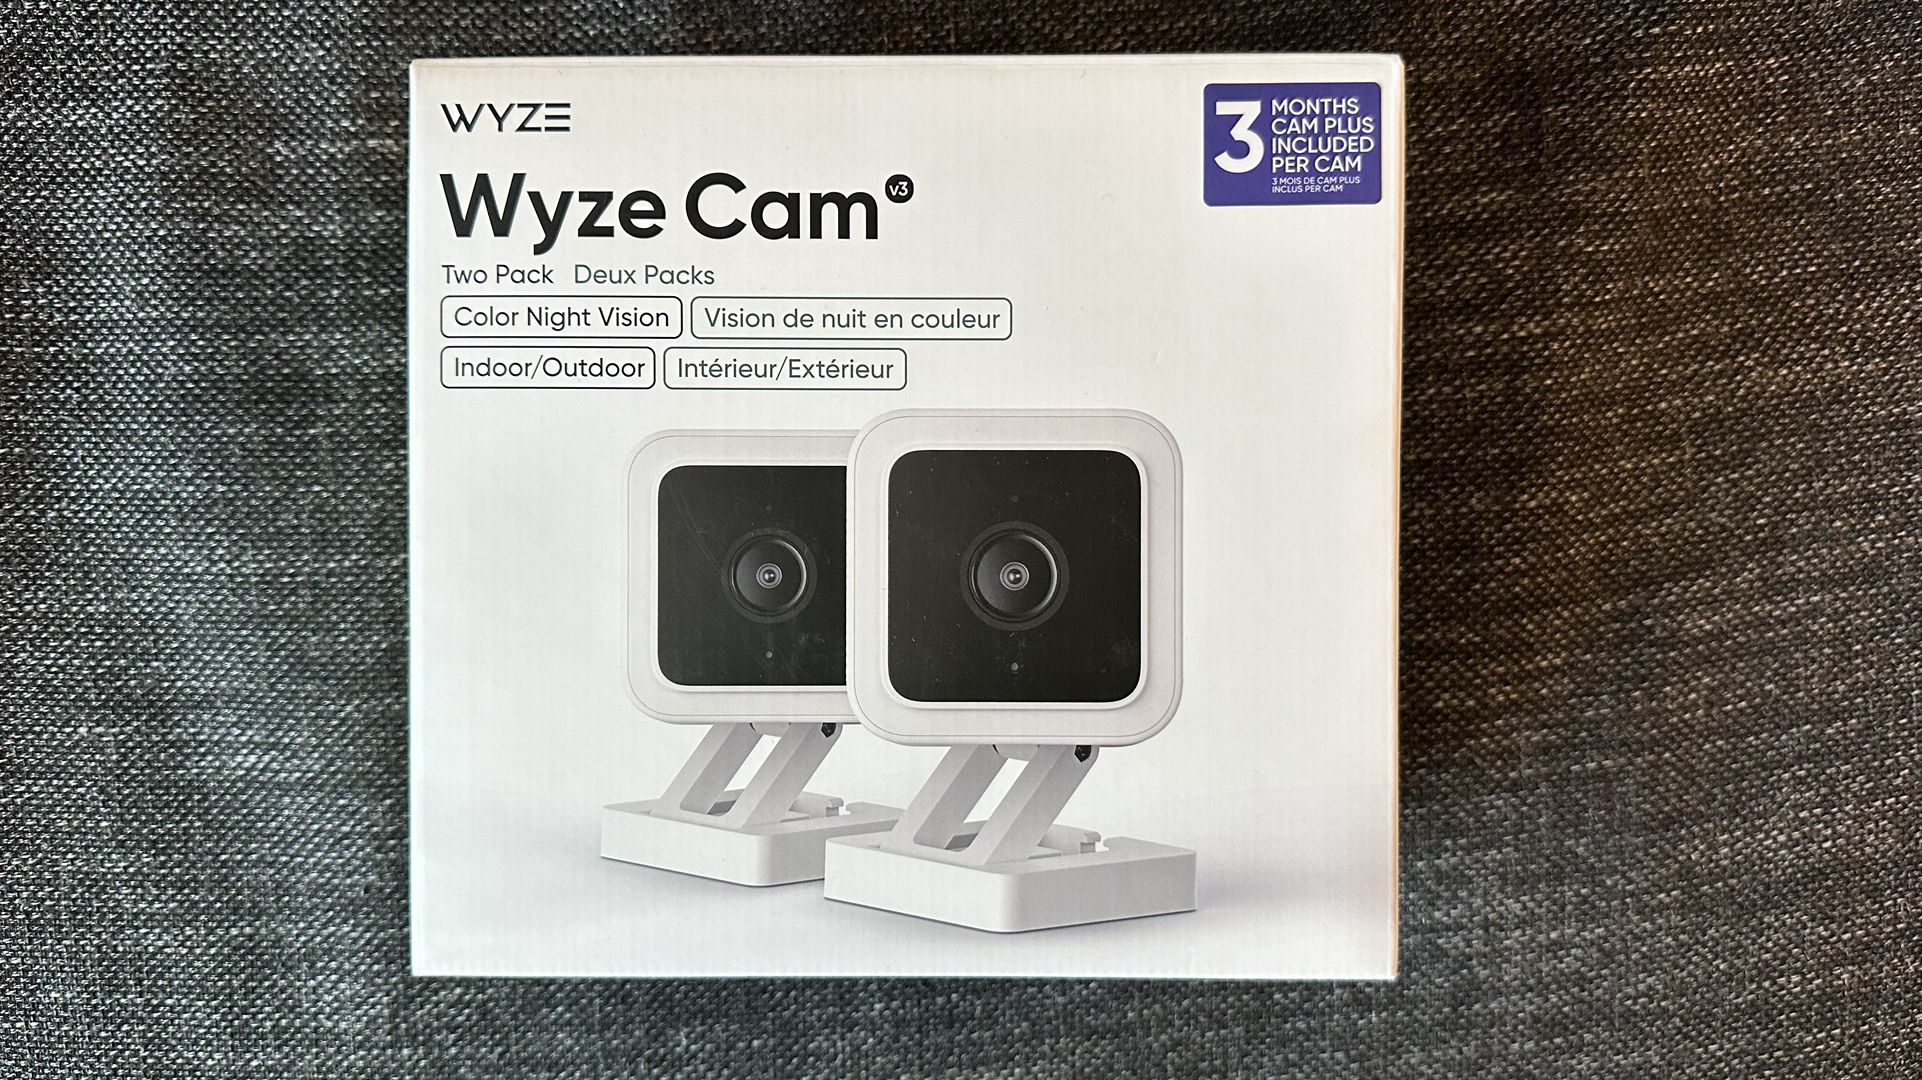 Wyze Cam Security Camera - Brand New